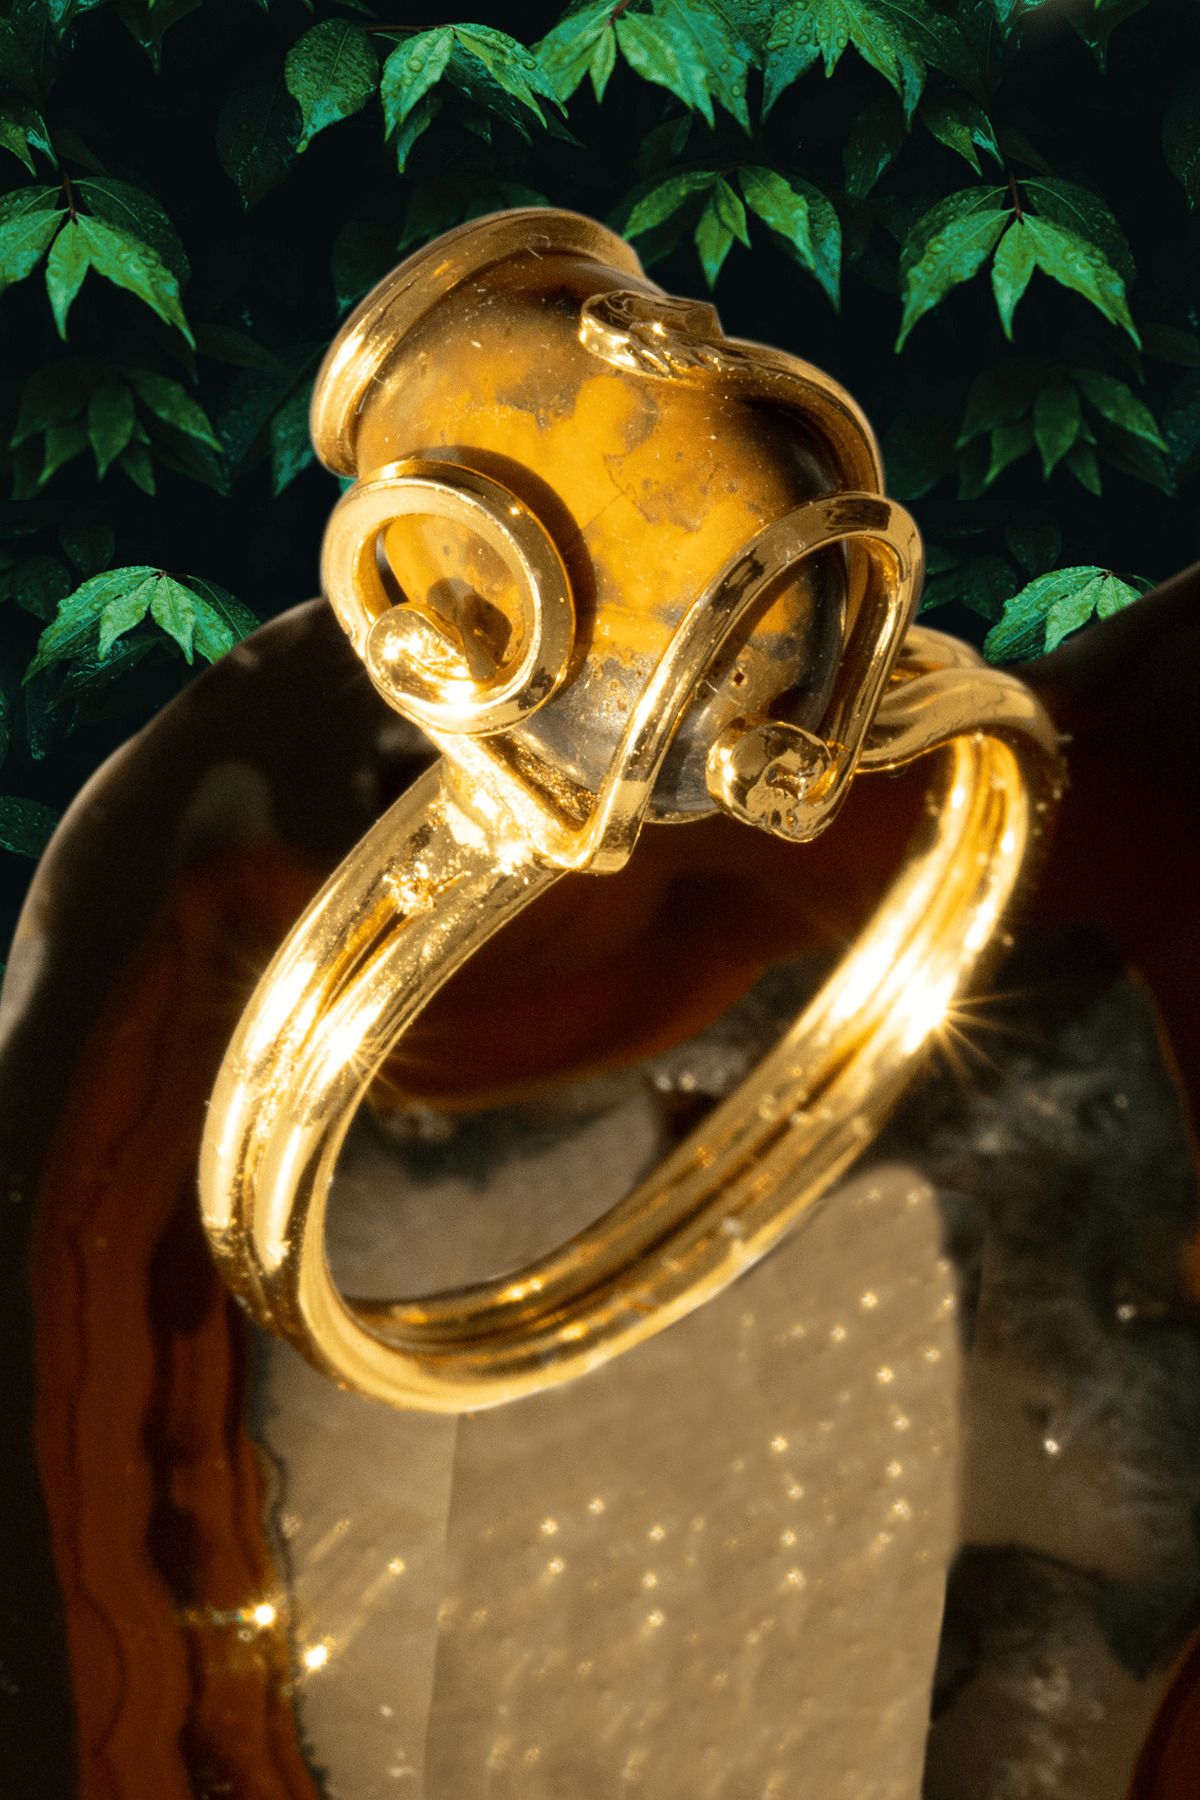 Tesbih Atölyesi Sertifikalı Gold Rokoko Model Pietersite Taşı Yüzük - Ayarlamalı